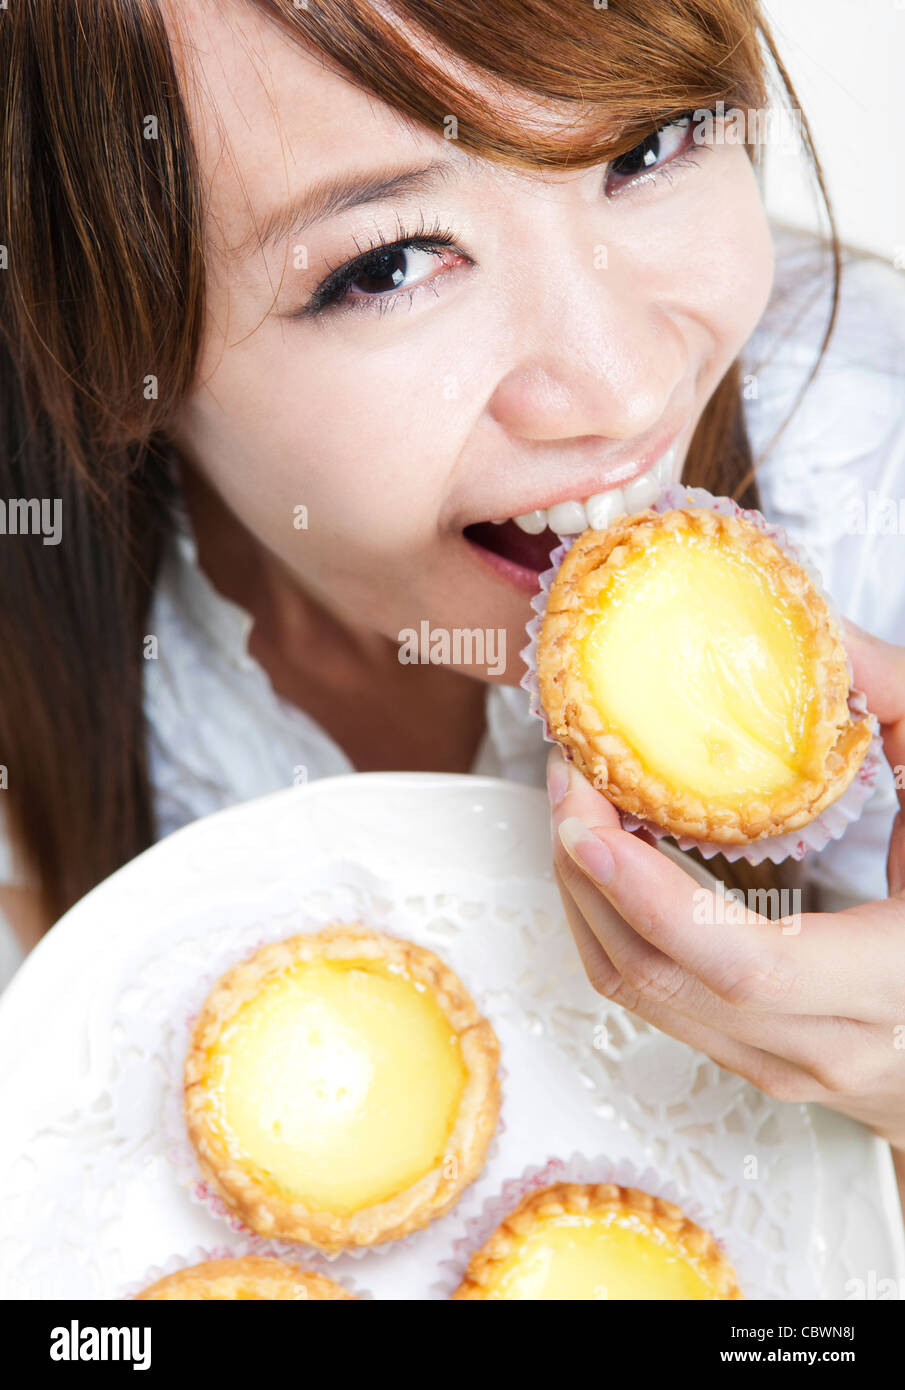 Close up young woman enjoying egg tart Stock Photo